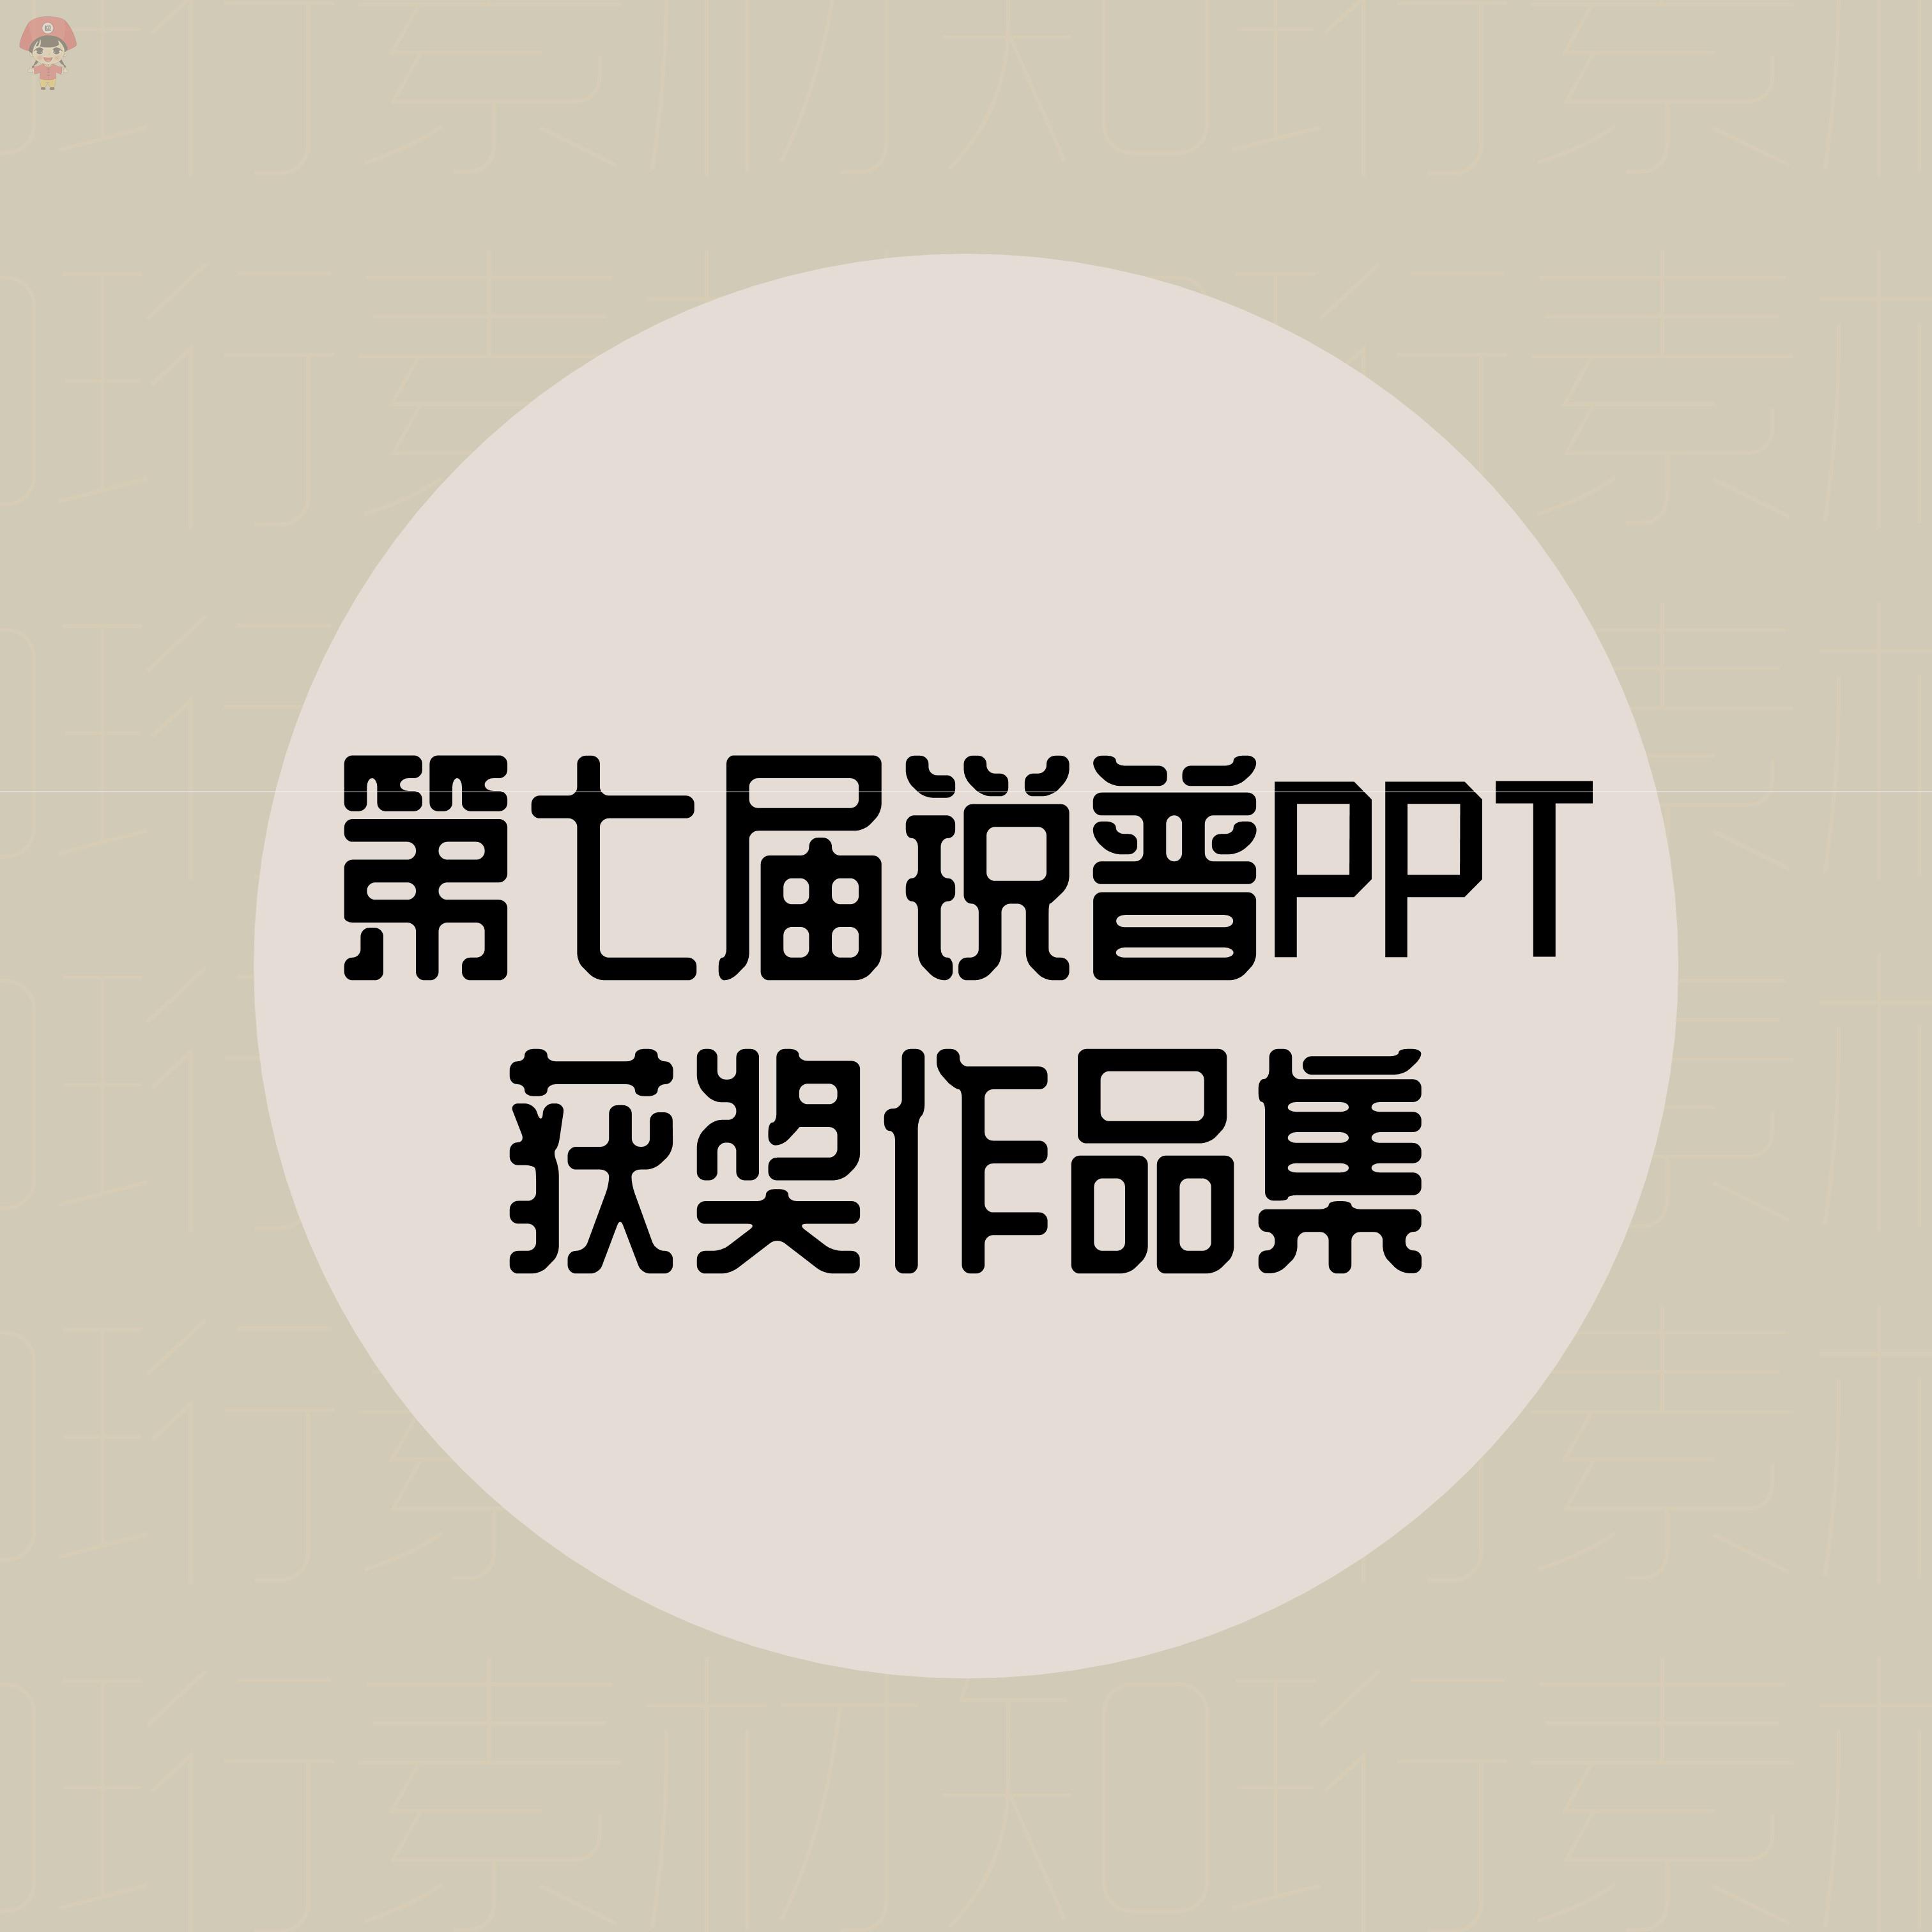 动画锐普PPT 获奖作品集 动态商务第七届全精选PPT模板设计素材